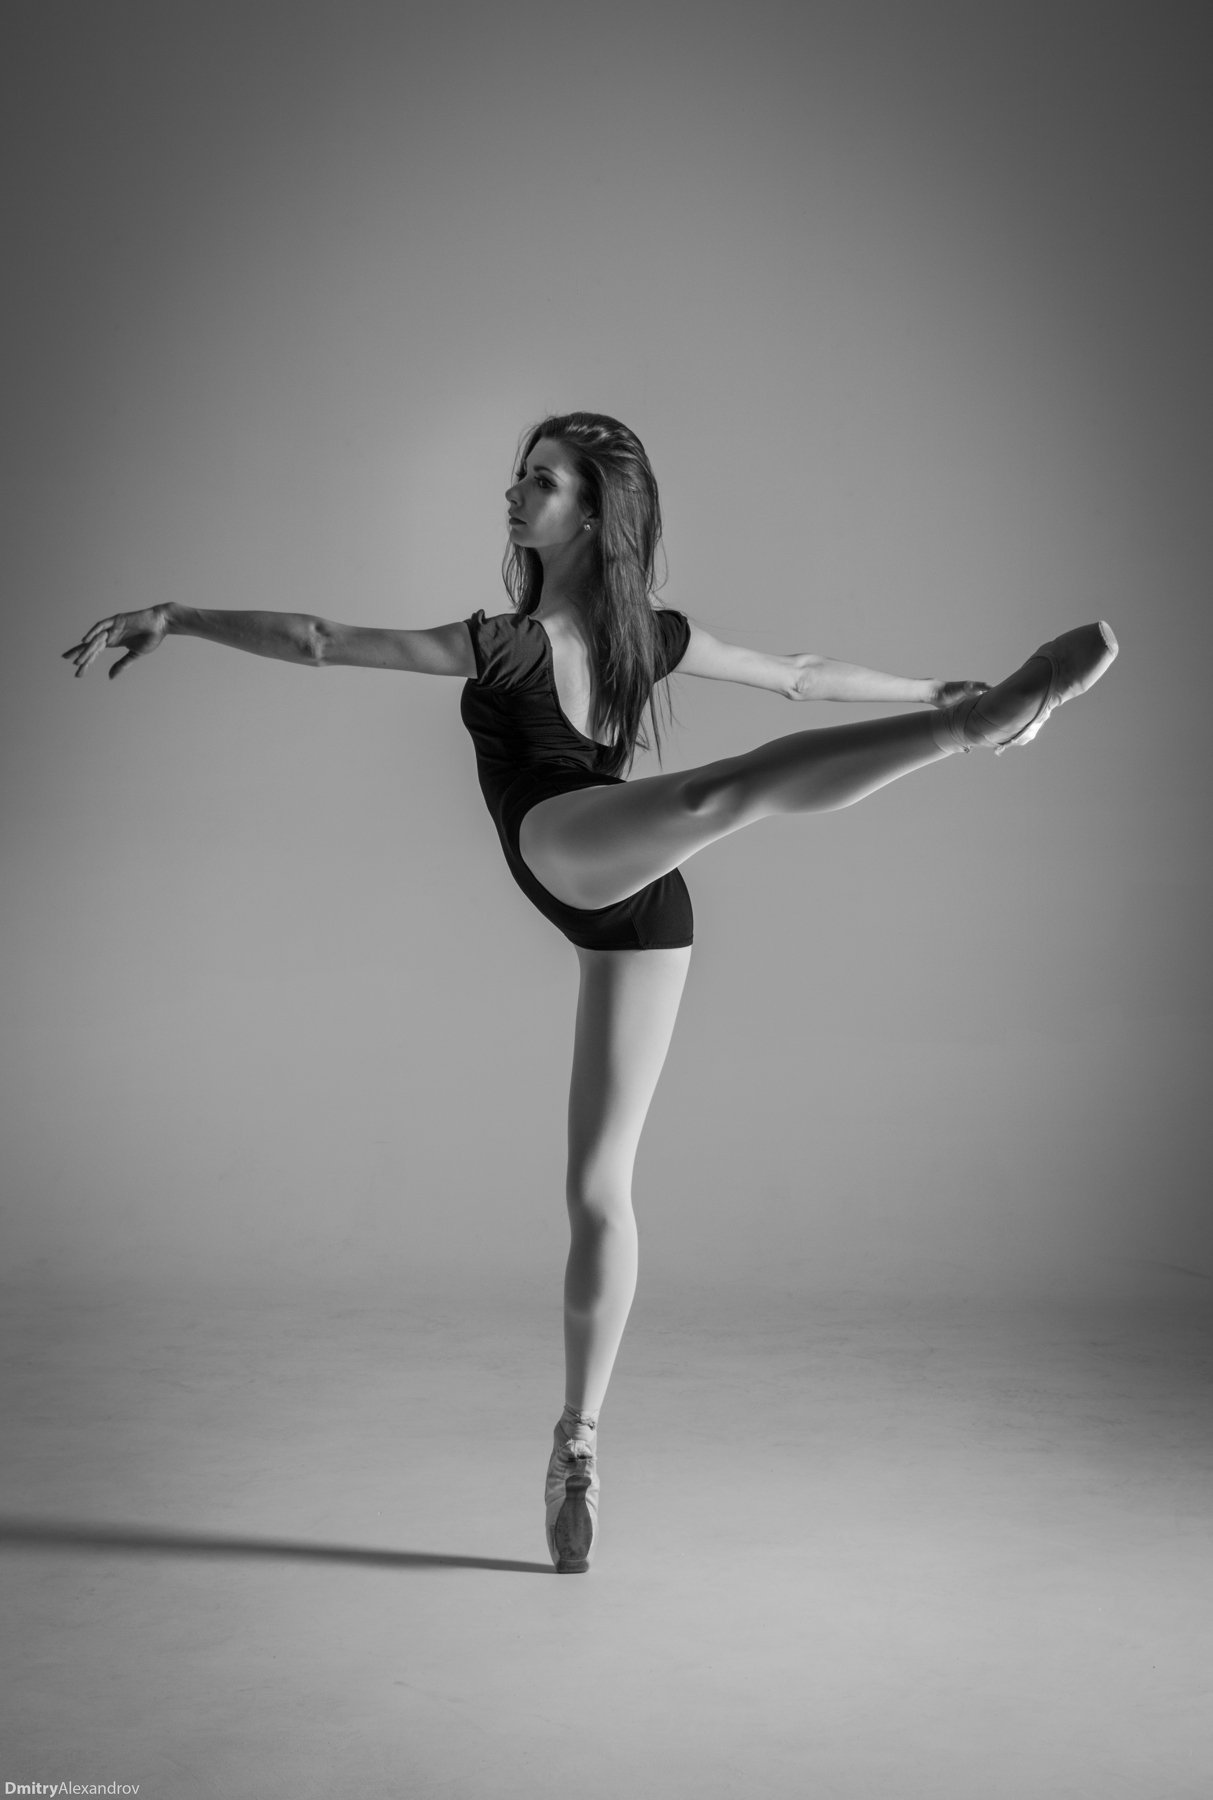 Балет, балерина,танец,пуанты,чб, Дмитрий Александров